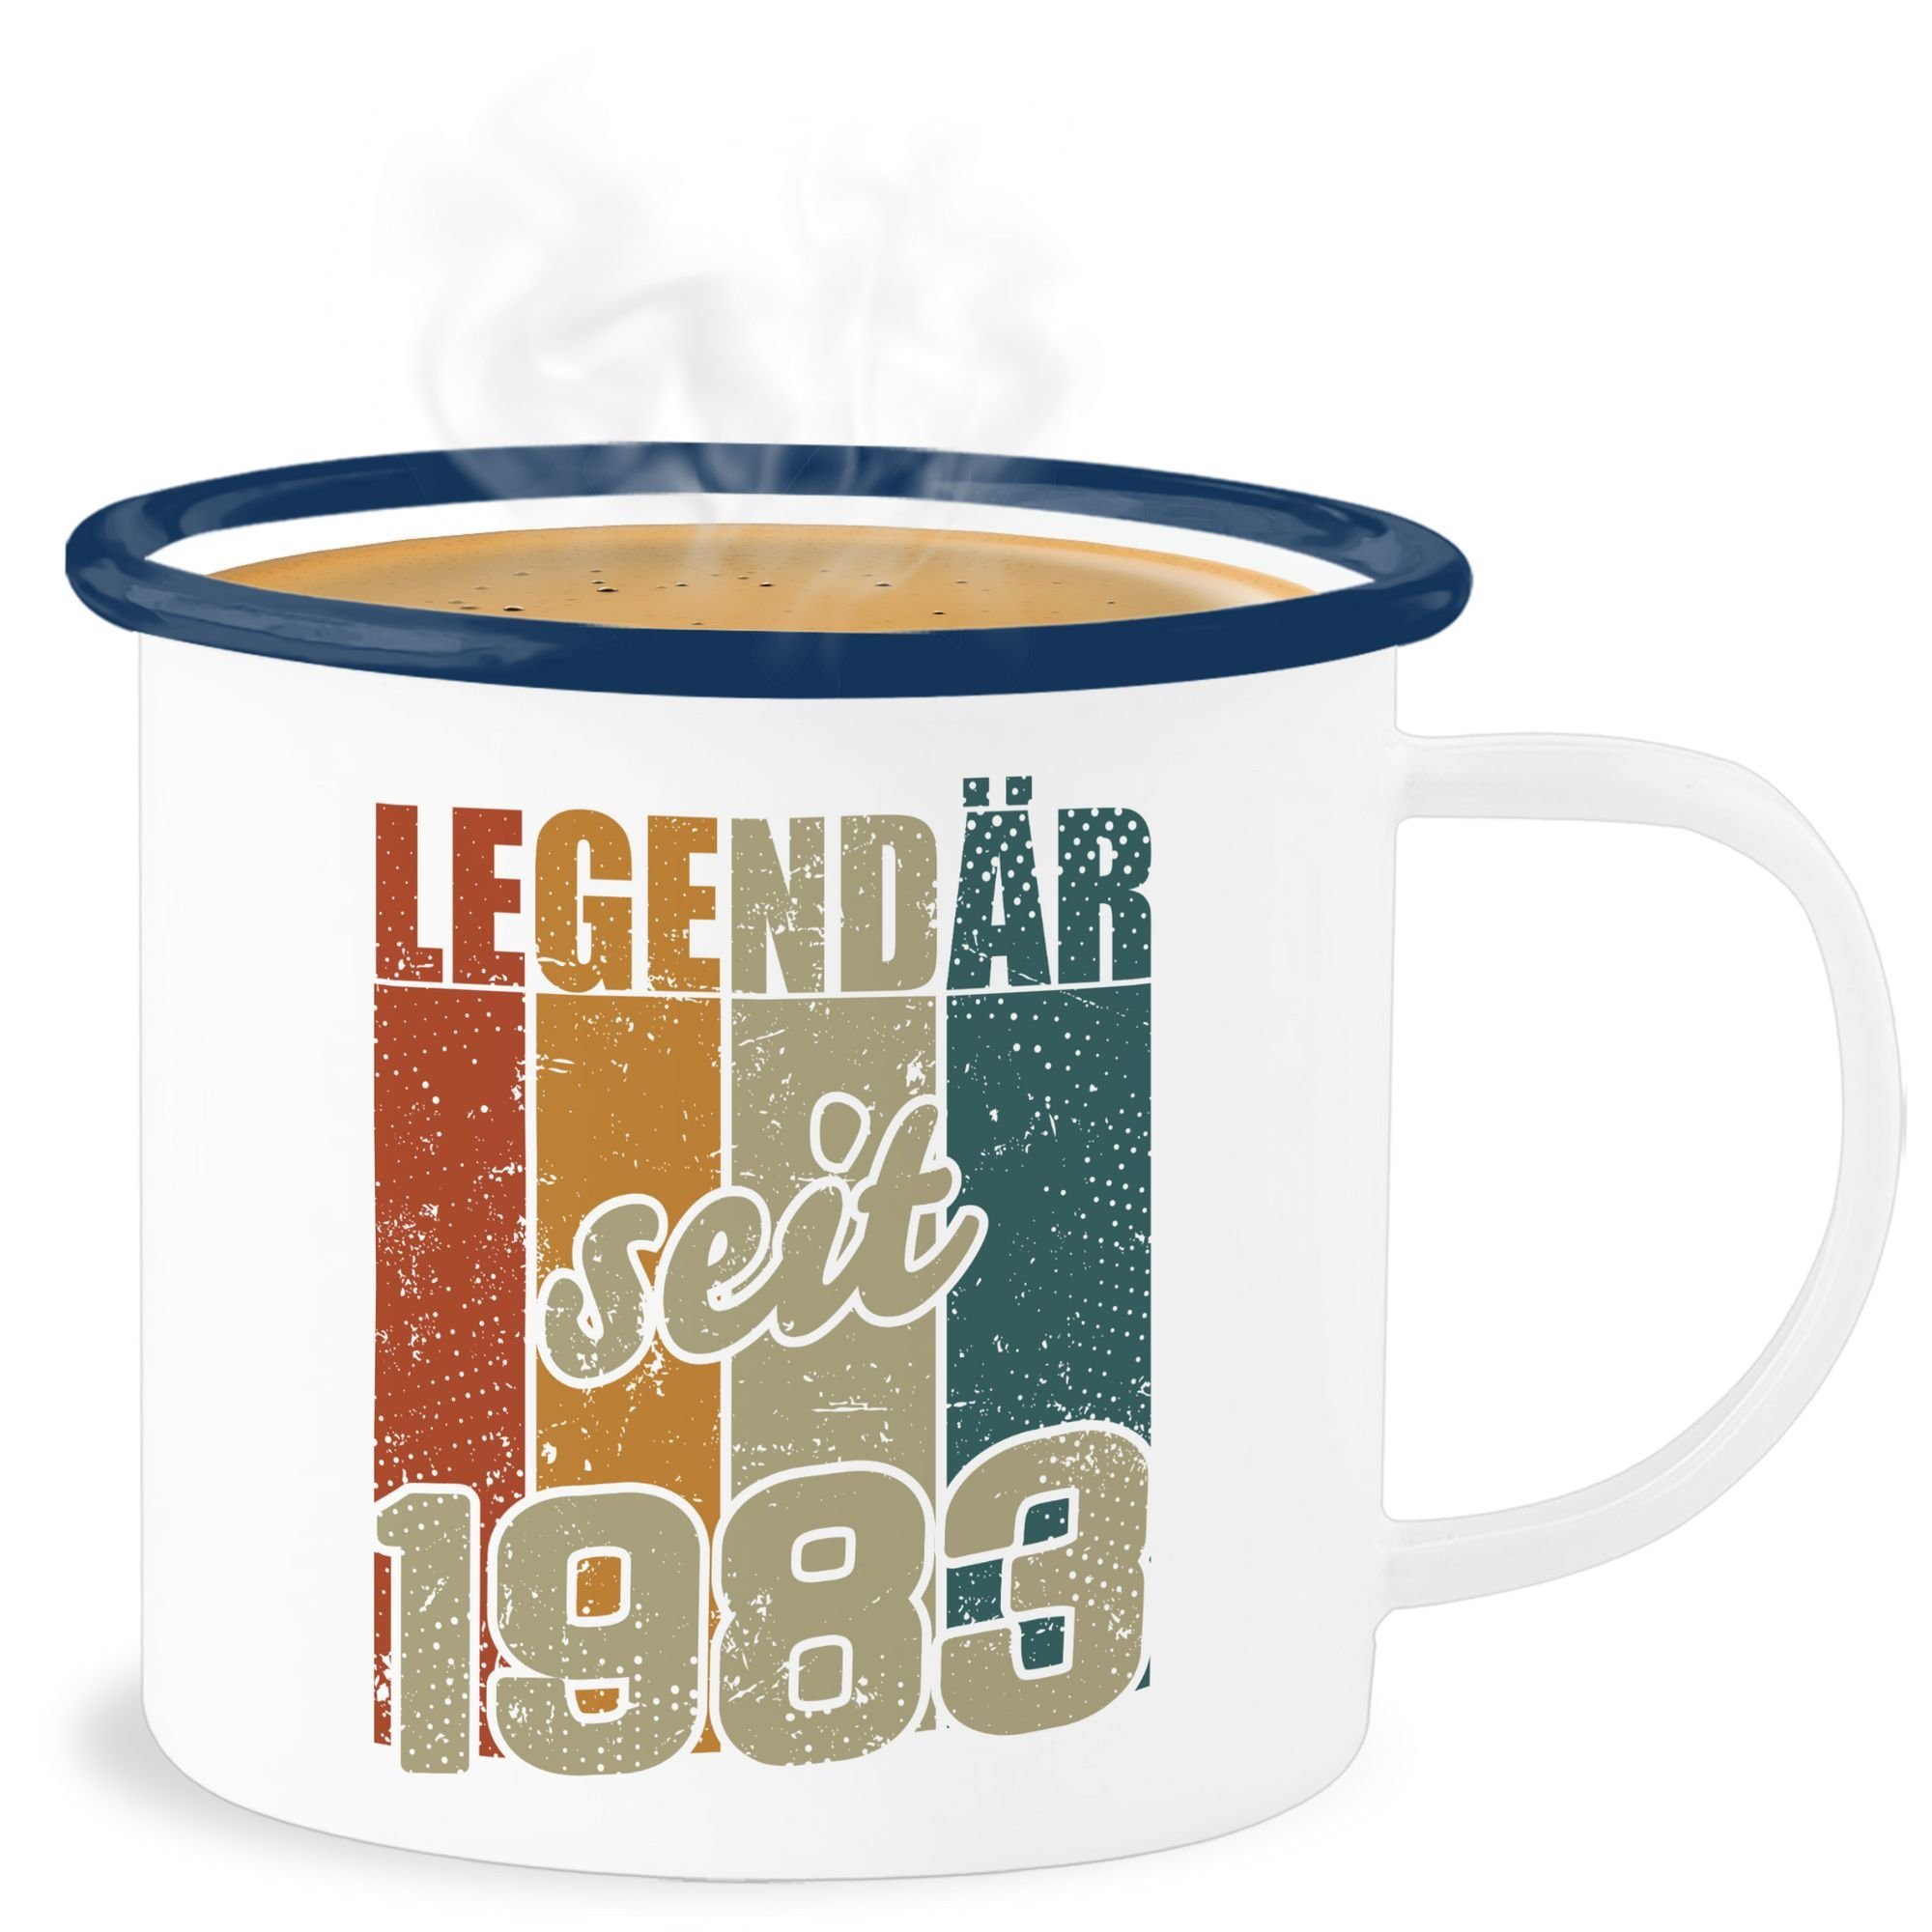 seit 1 Blau Becher - Vintage Shirtracer Farben, Tasse Geburtstag Stahlblech, Legendär 40. 1983 Weiß